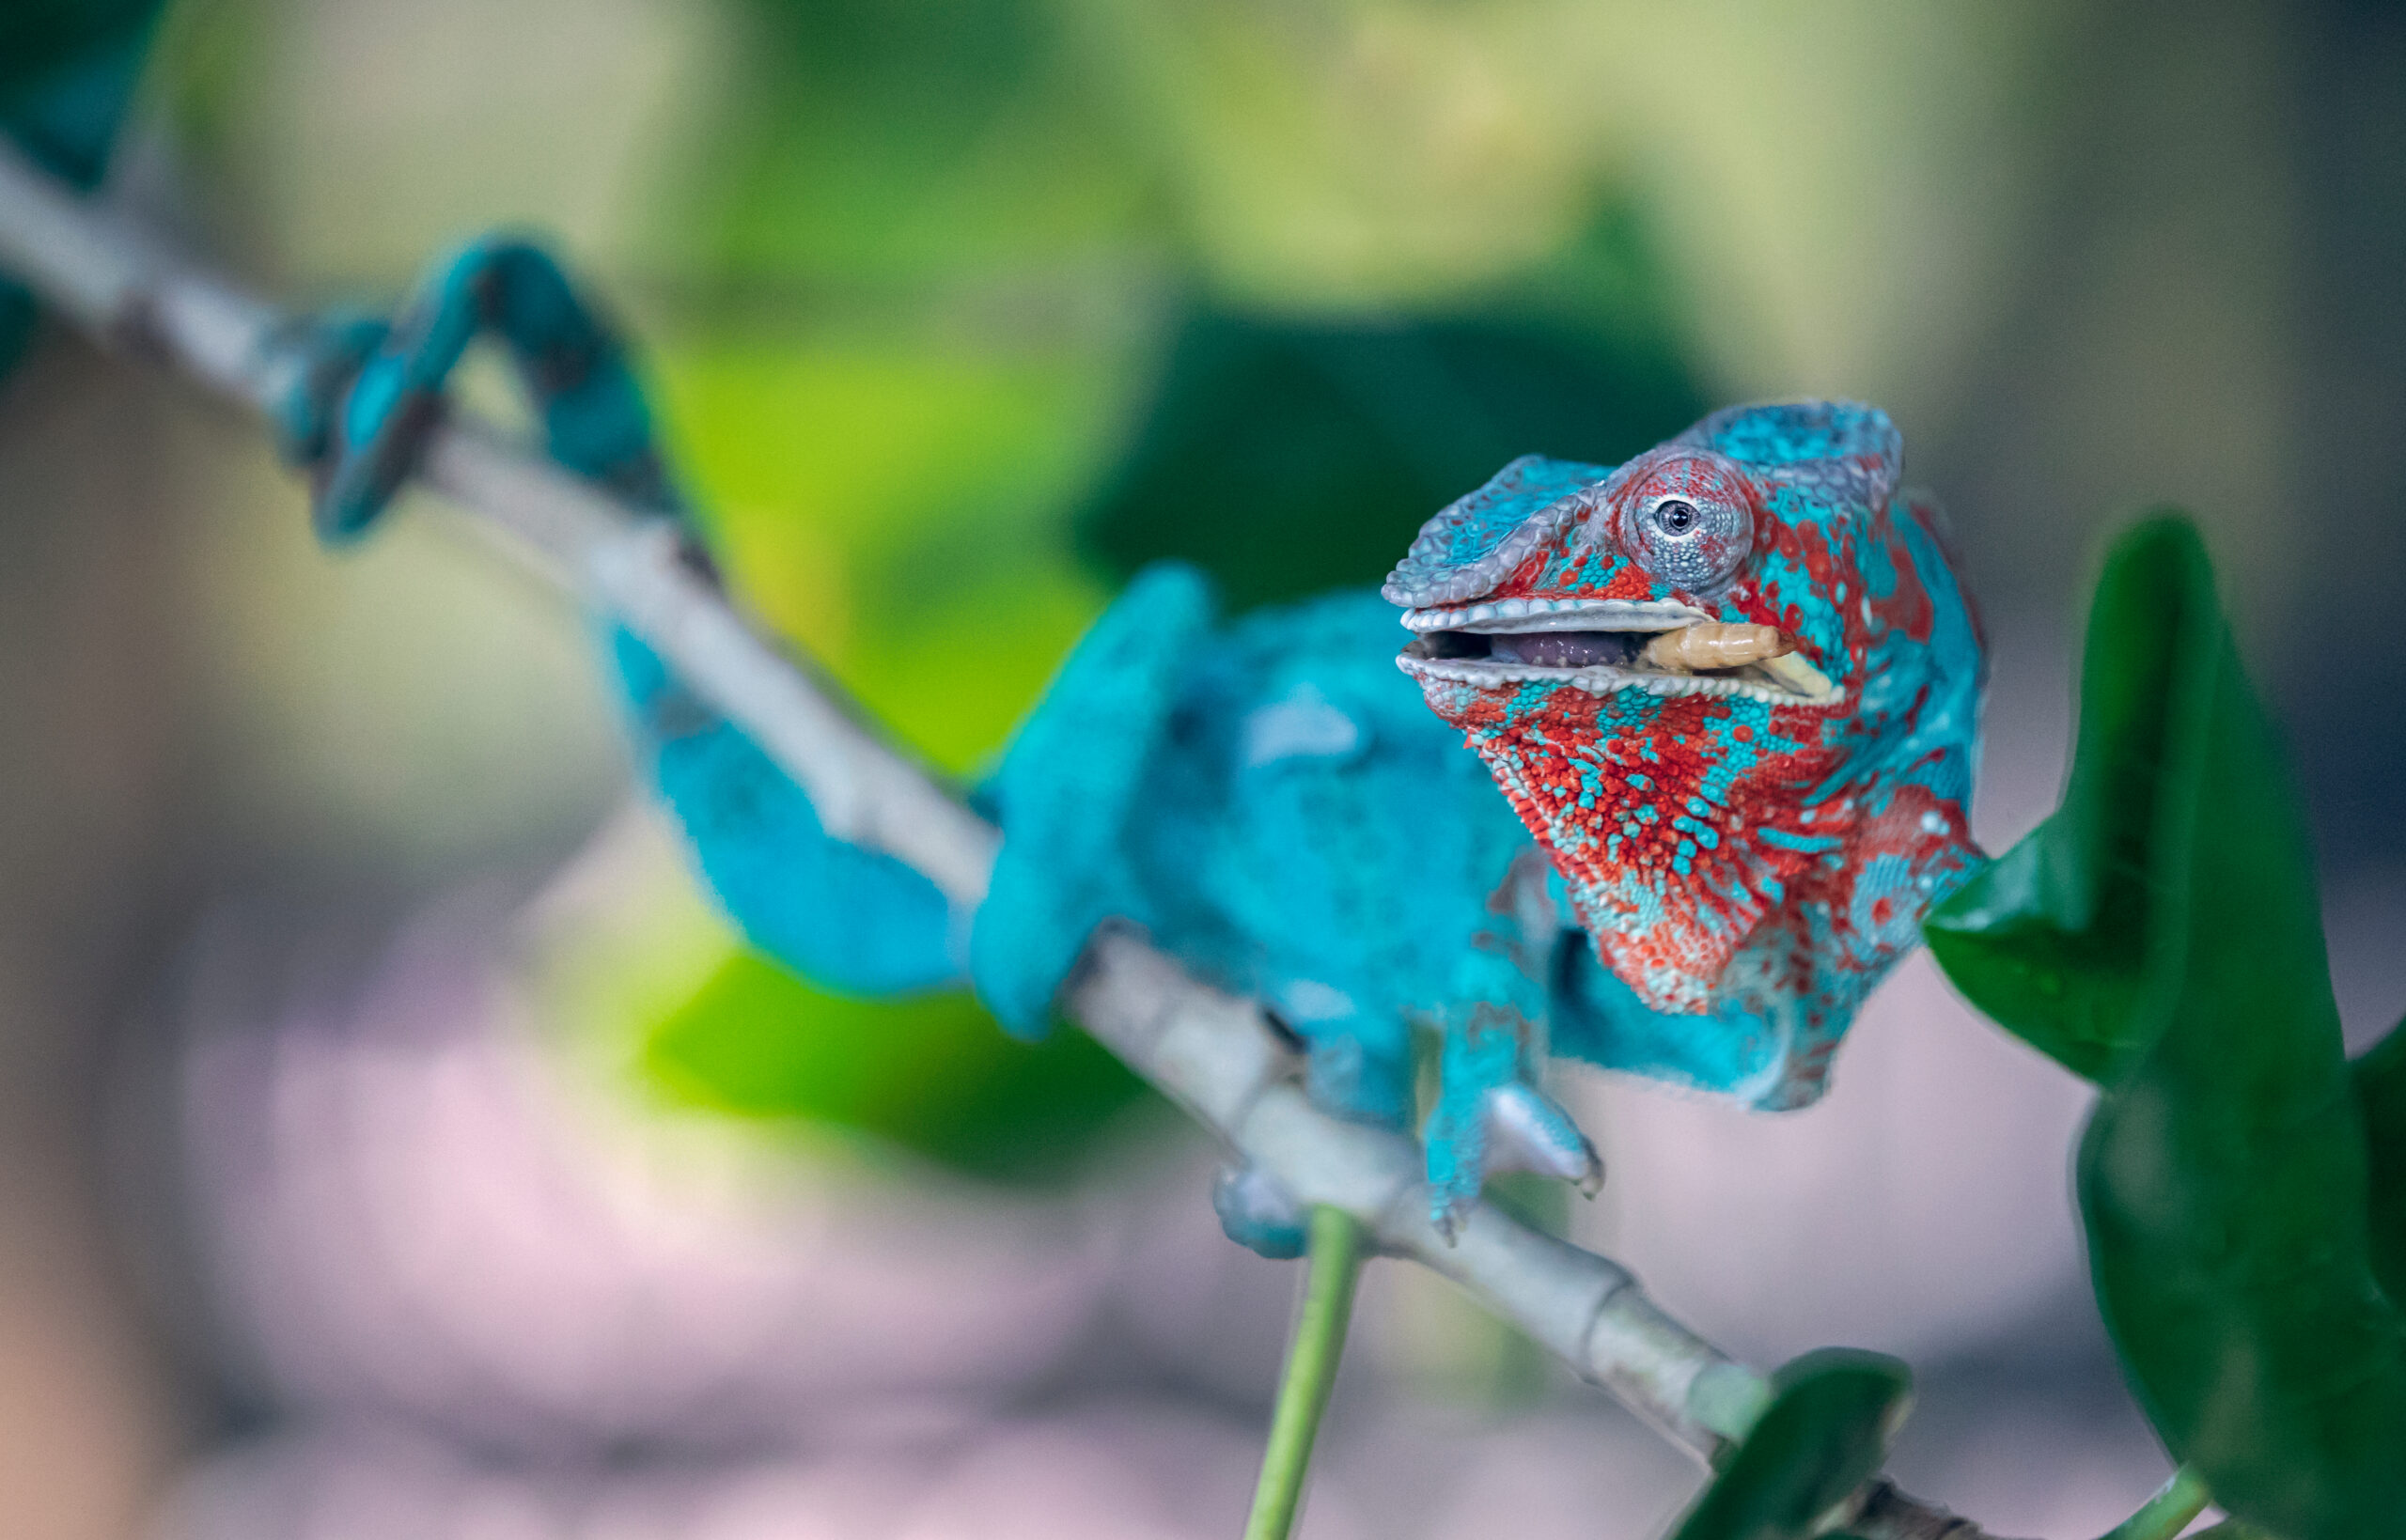 The Green Planet Dubai - Blue chameleon